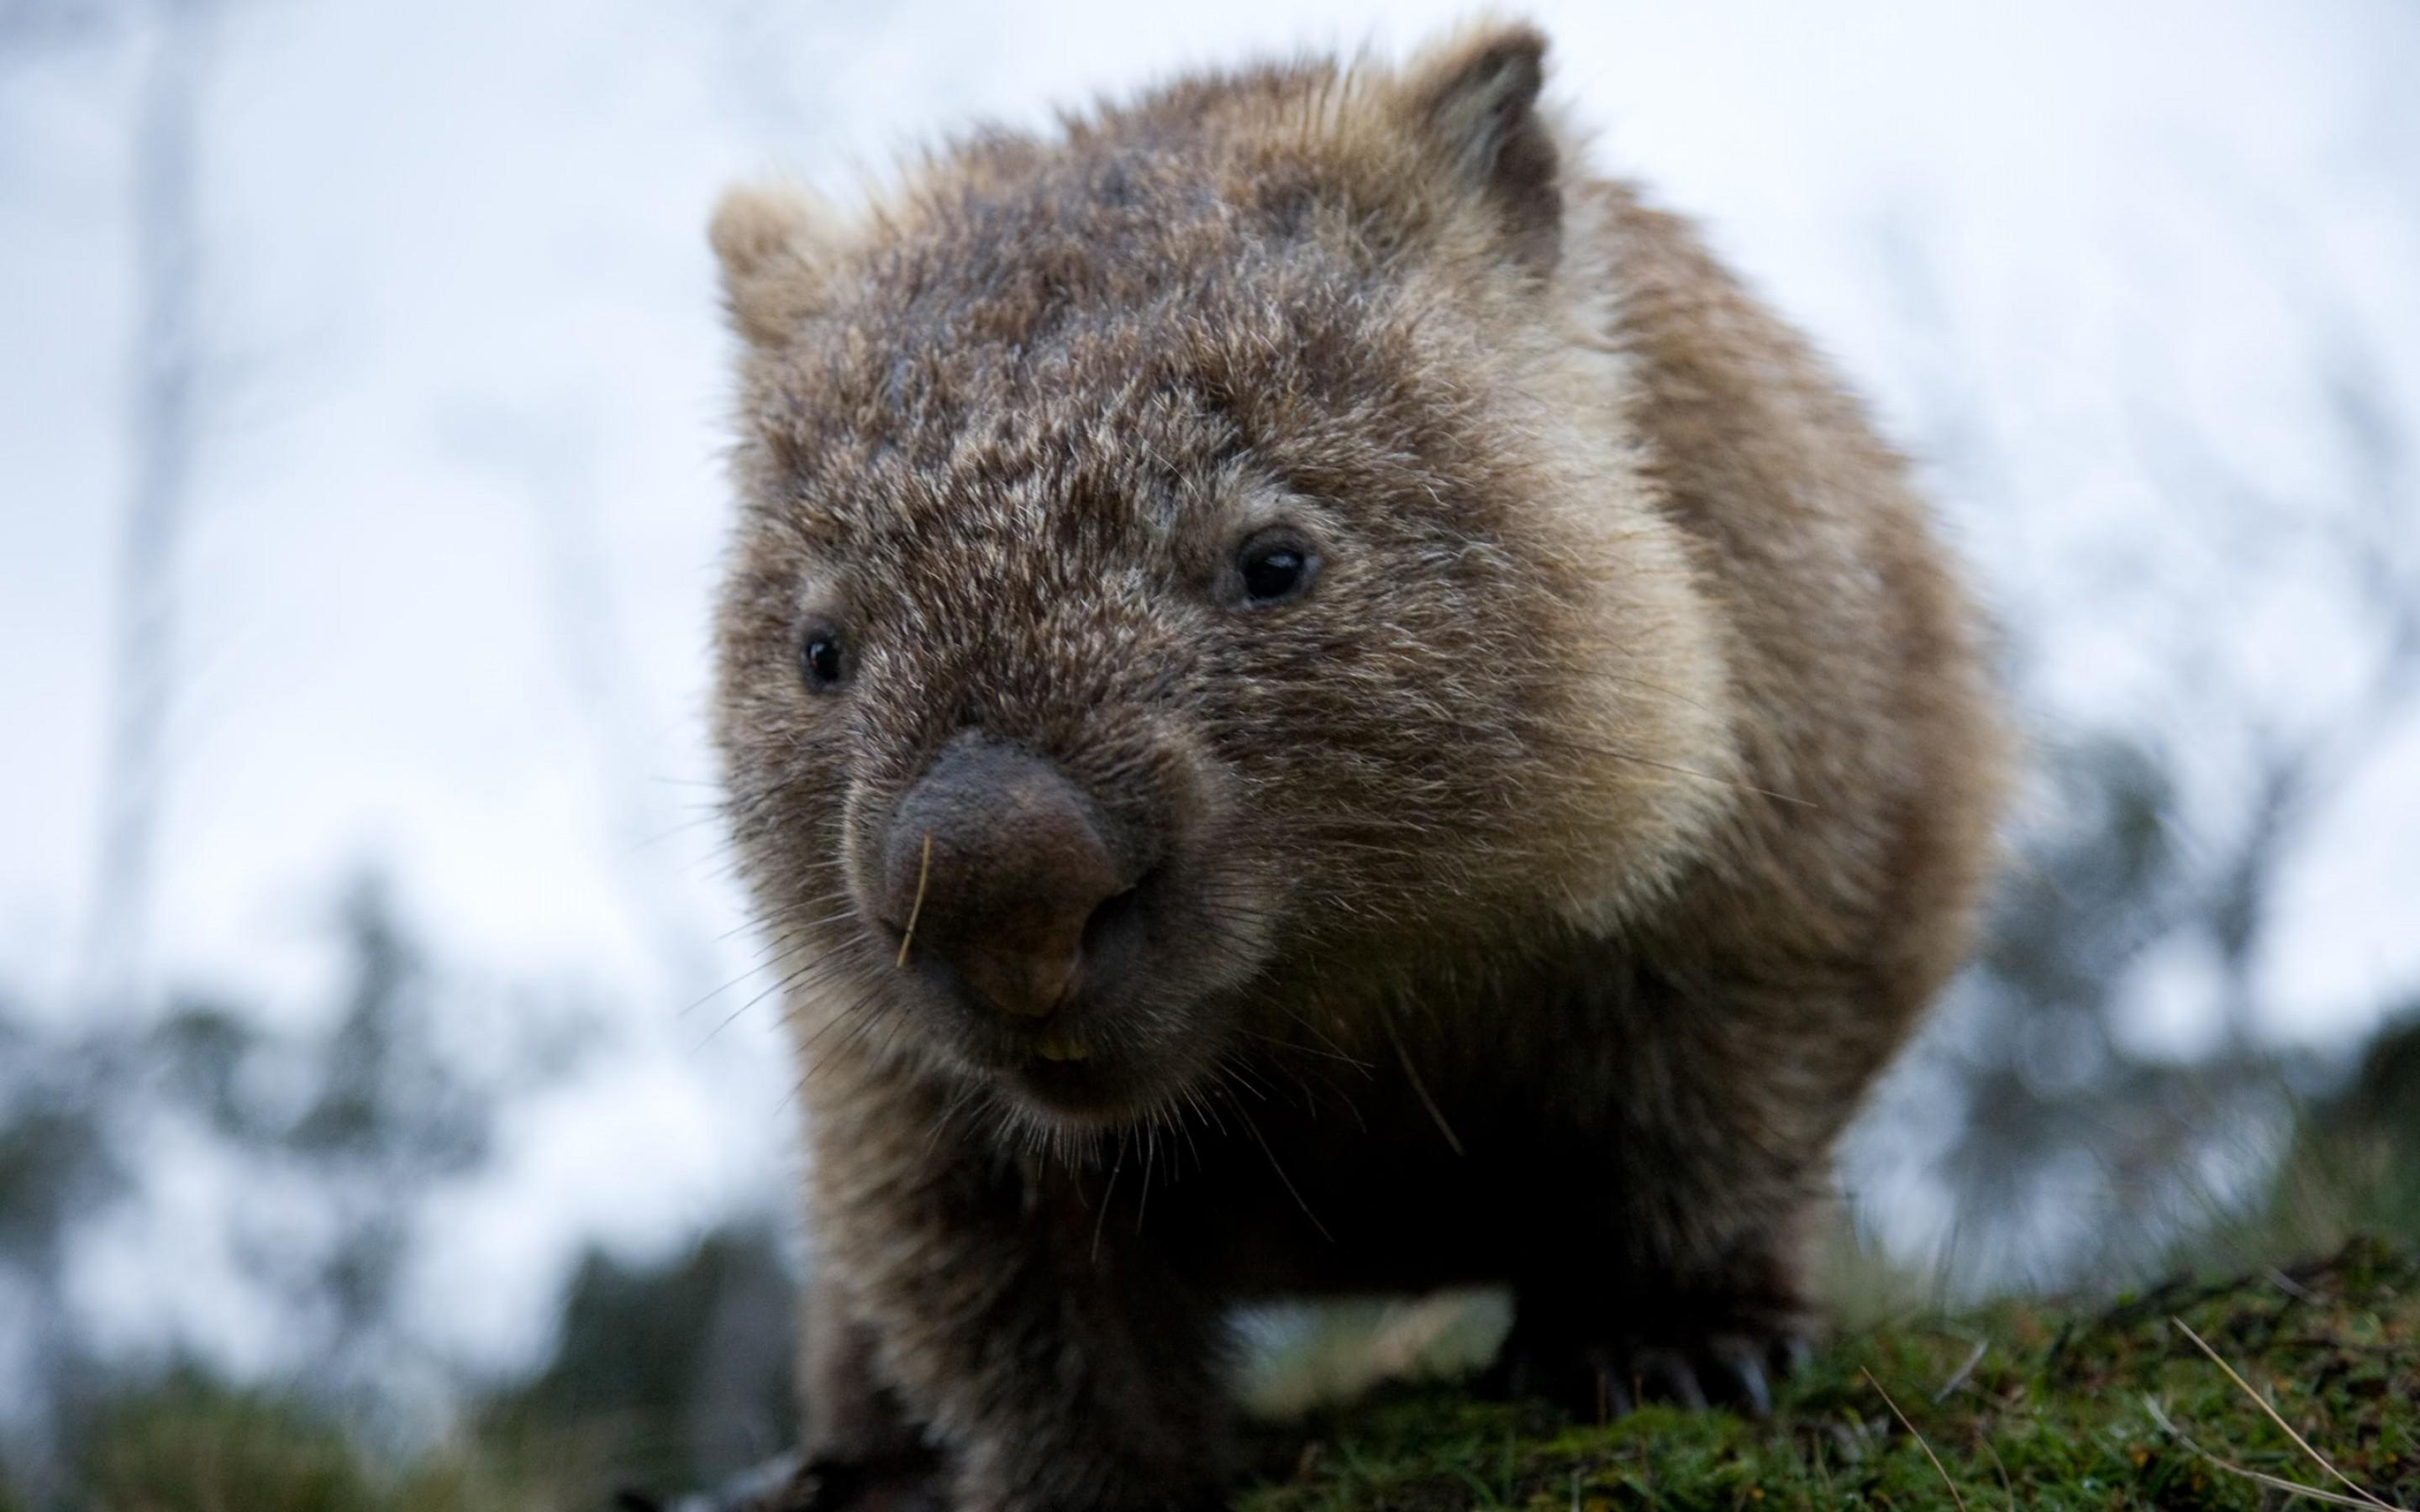 Mwy Wombat